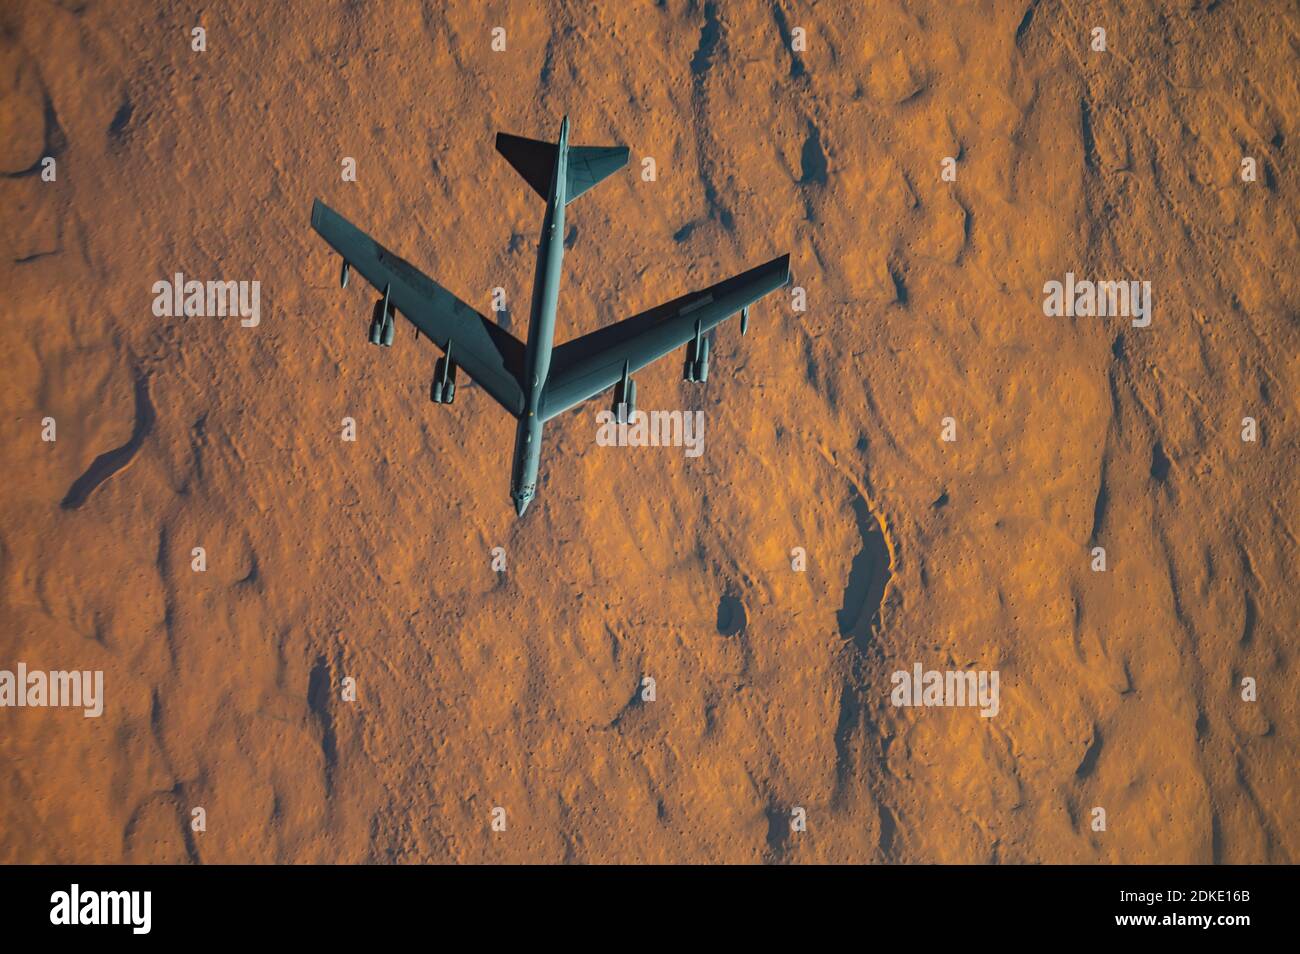 Un bombardier stratégique B-52 Stratofortress de la US Air Force de la 2e Escadre Bomb, à bord d'une mission de la Force opérationnelle d'bombardier de plusieurs jours le 10 décembre 2020 au-dessus du Qatar. Le bombardier a été déplacé dans la région à la suite d'une augmentation des tensions avec l'Iran. Banque D'Images